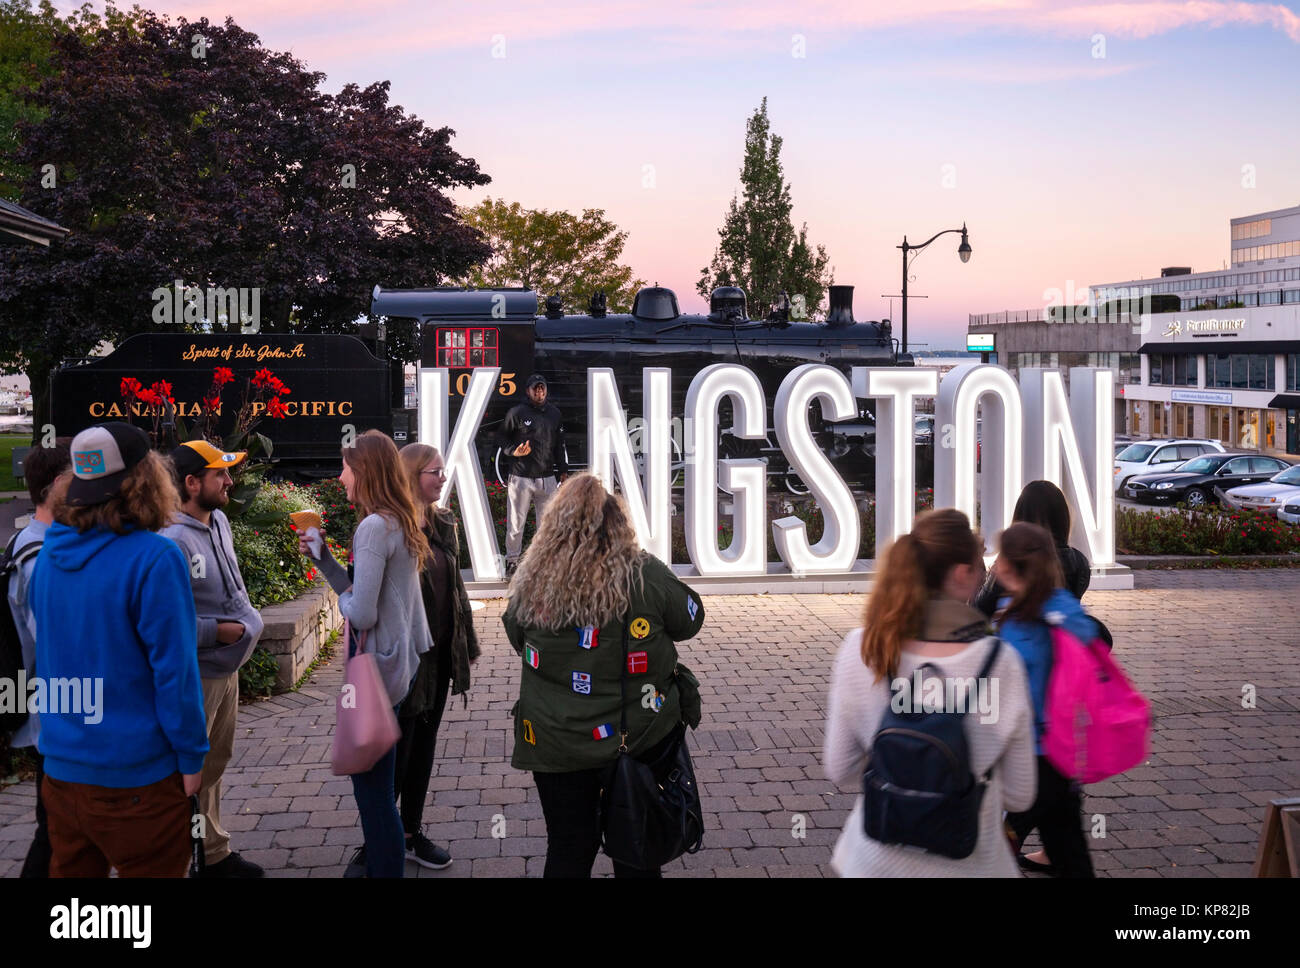 Un segnale illuminato al tramonto per Kingston denominata "Io in Kingston " è un'attrazione turistica con i giovani (turisti) raccolta per scattare foto. Foto Stock